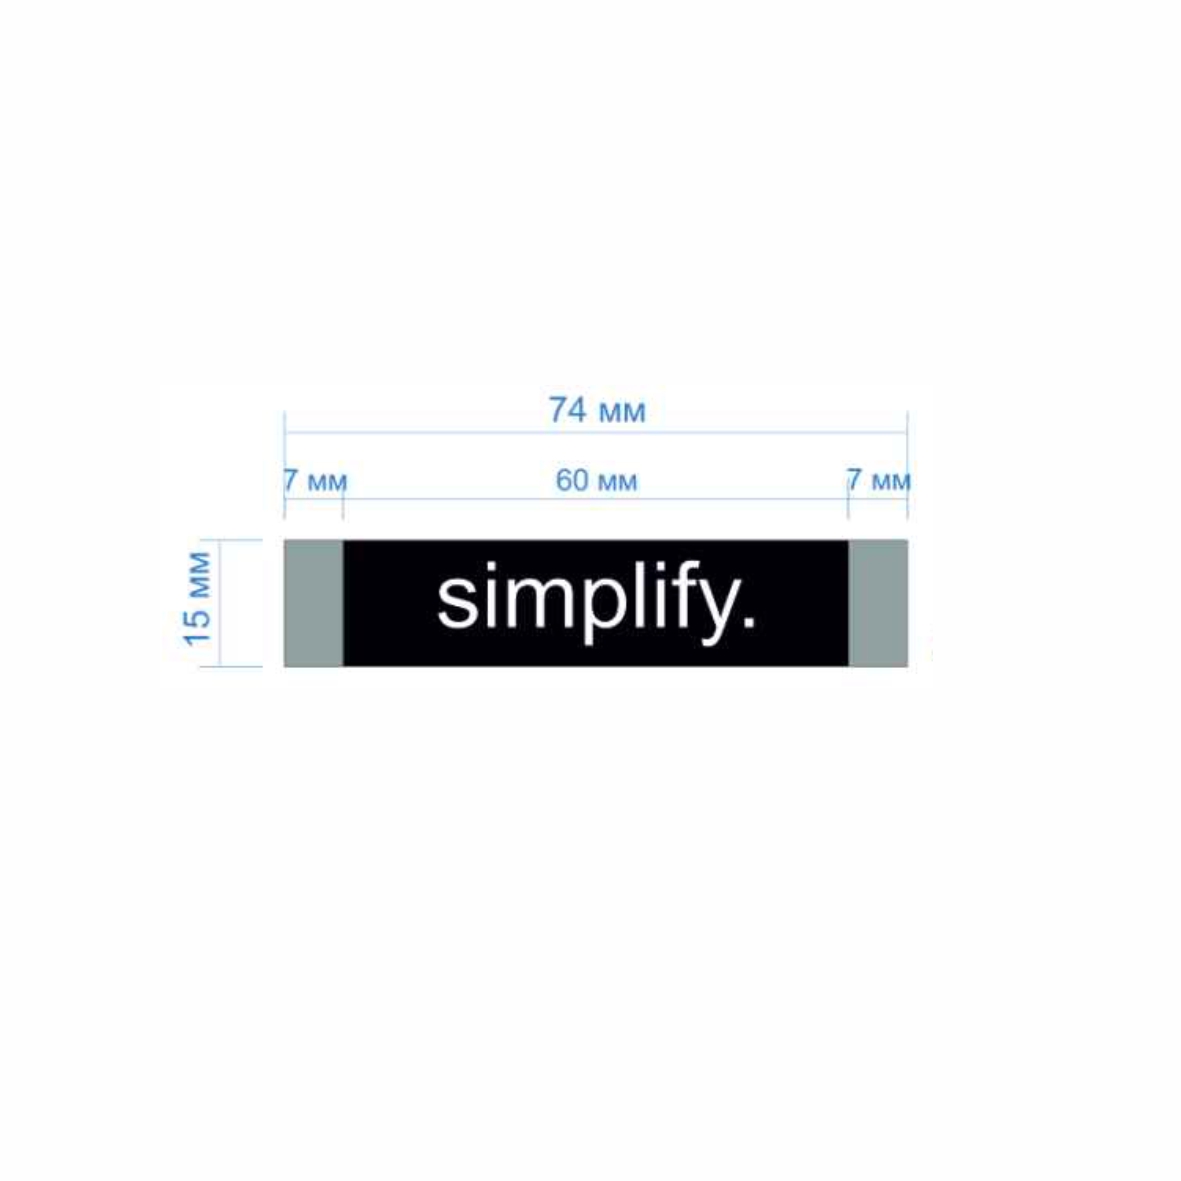 Этикетка тканевая Simplify 1,5см черная и белый лого /70 atki/, шт. Вышивка / этикетка тканевая